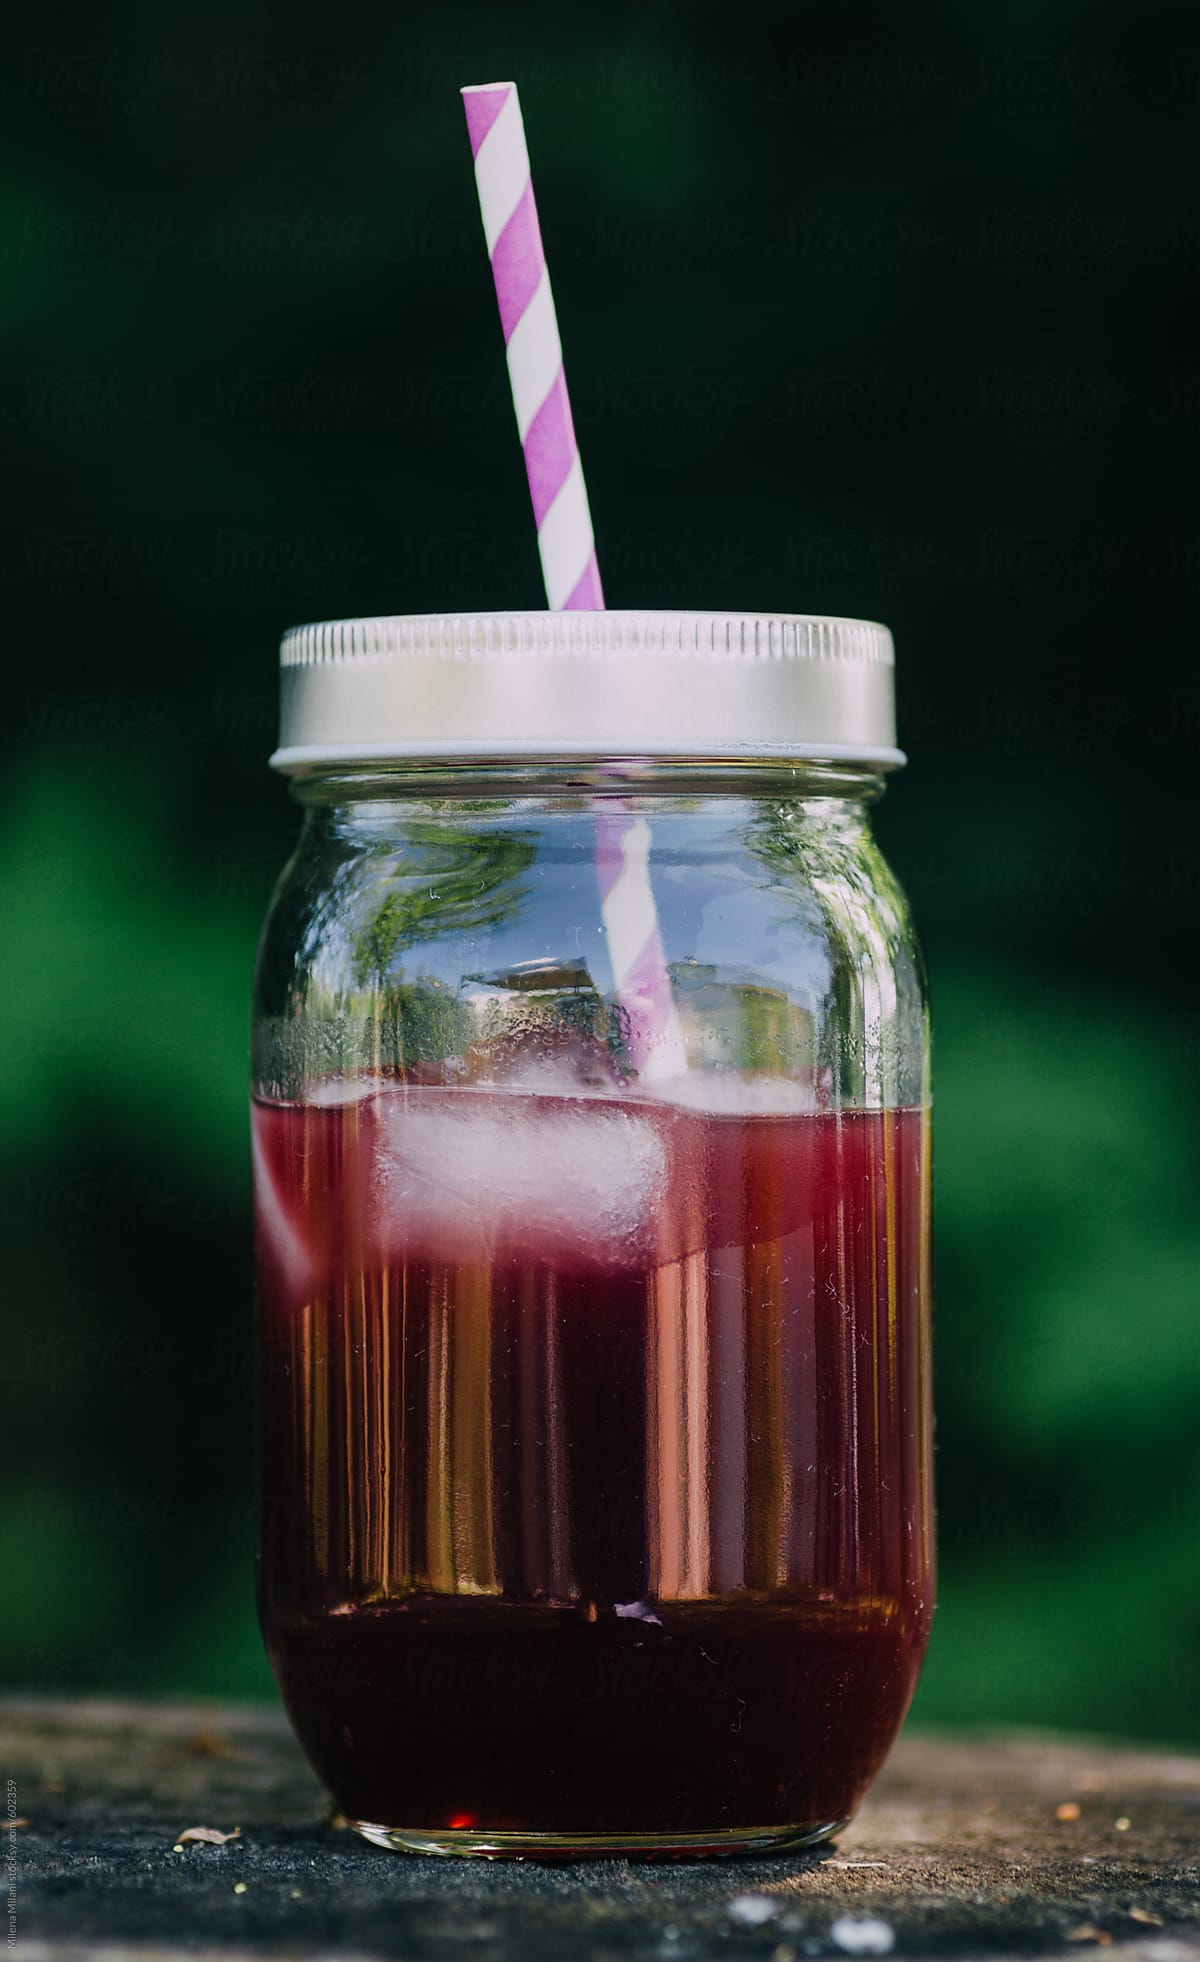 berries juice in a jar